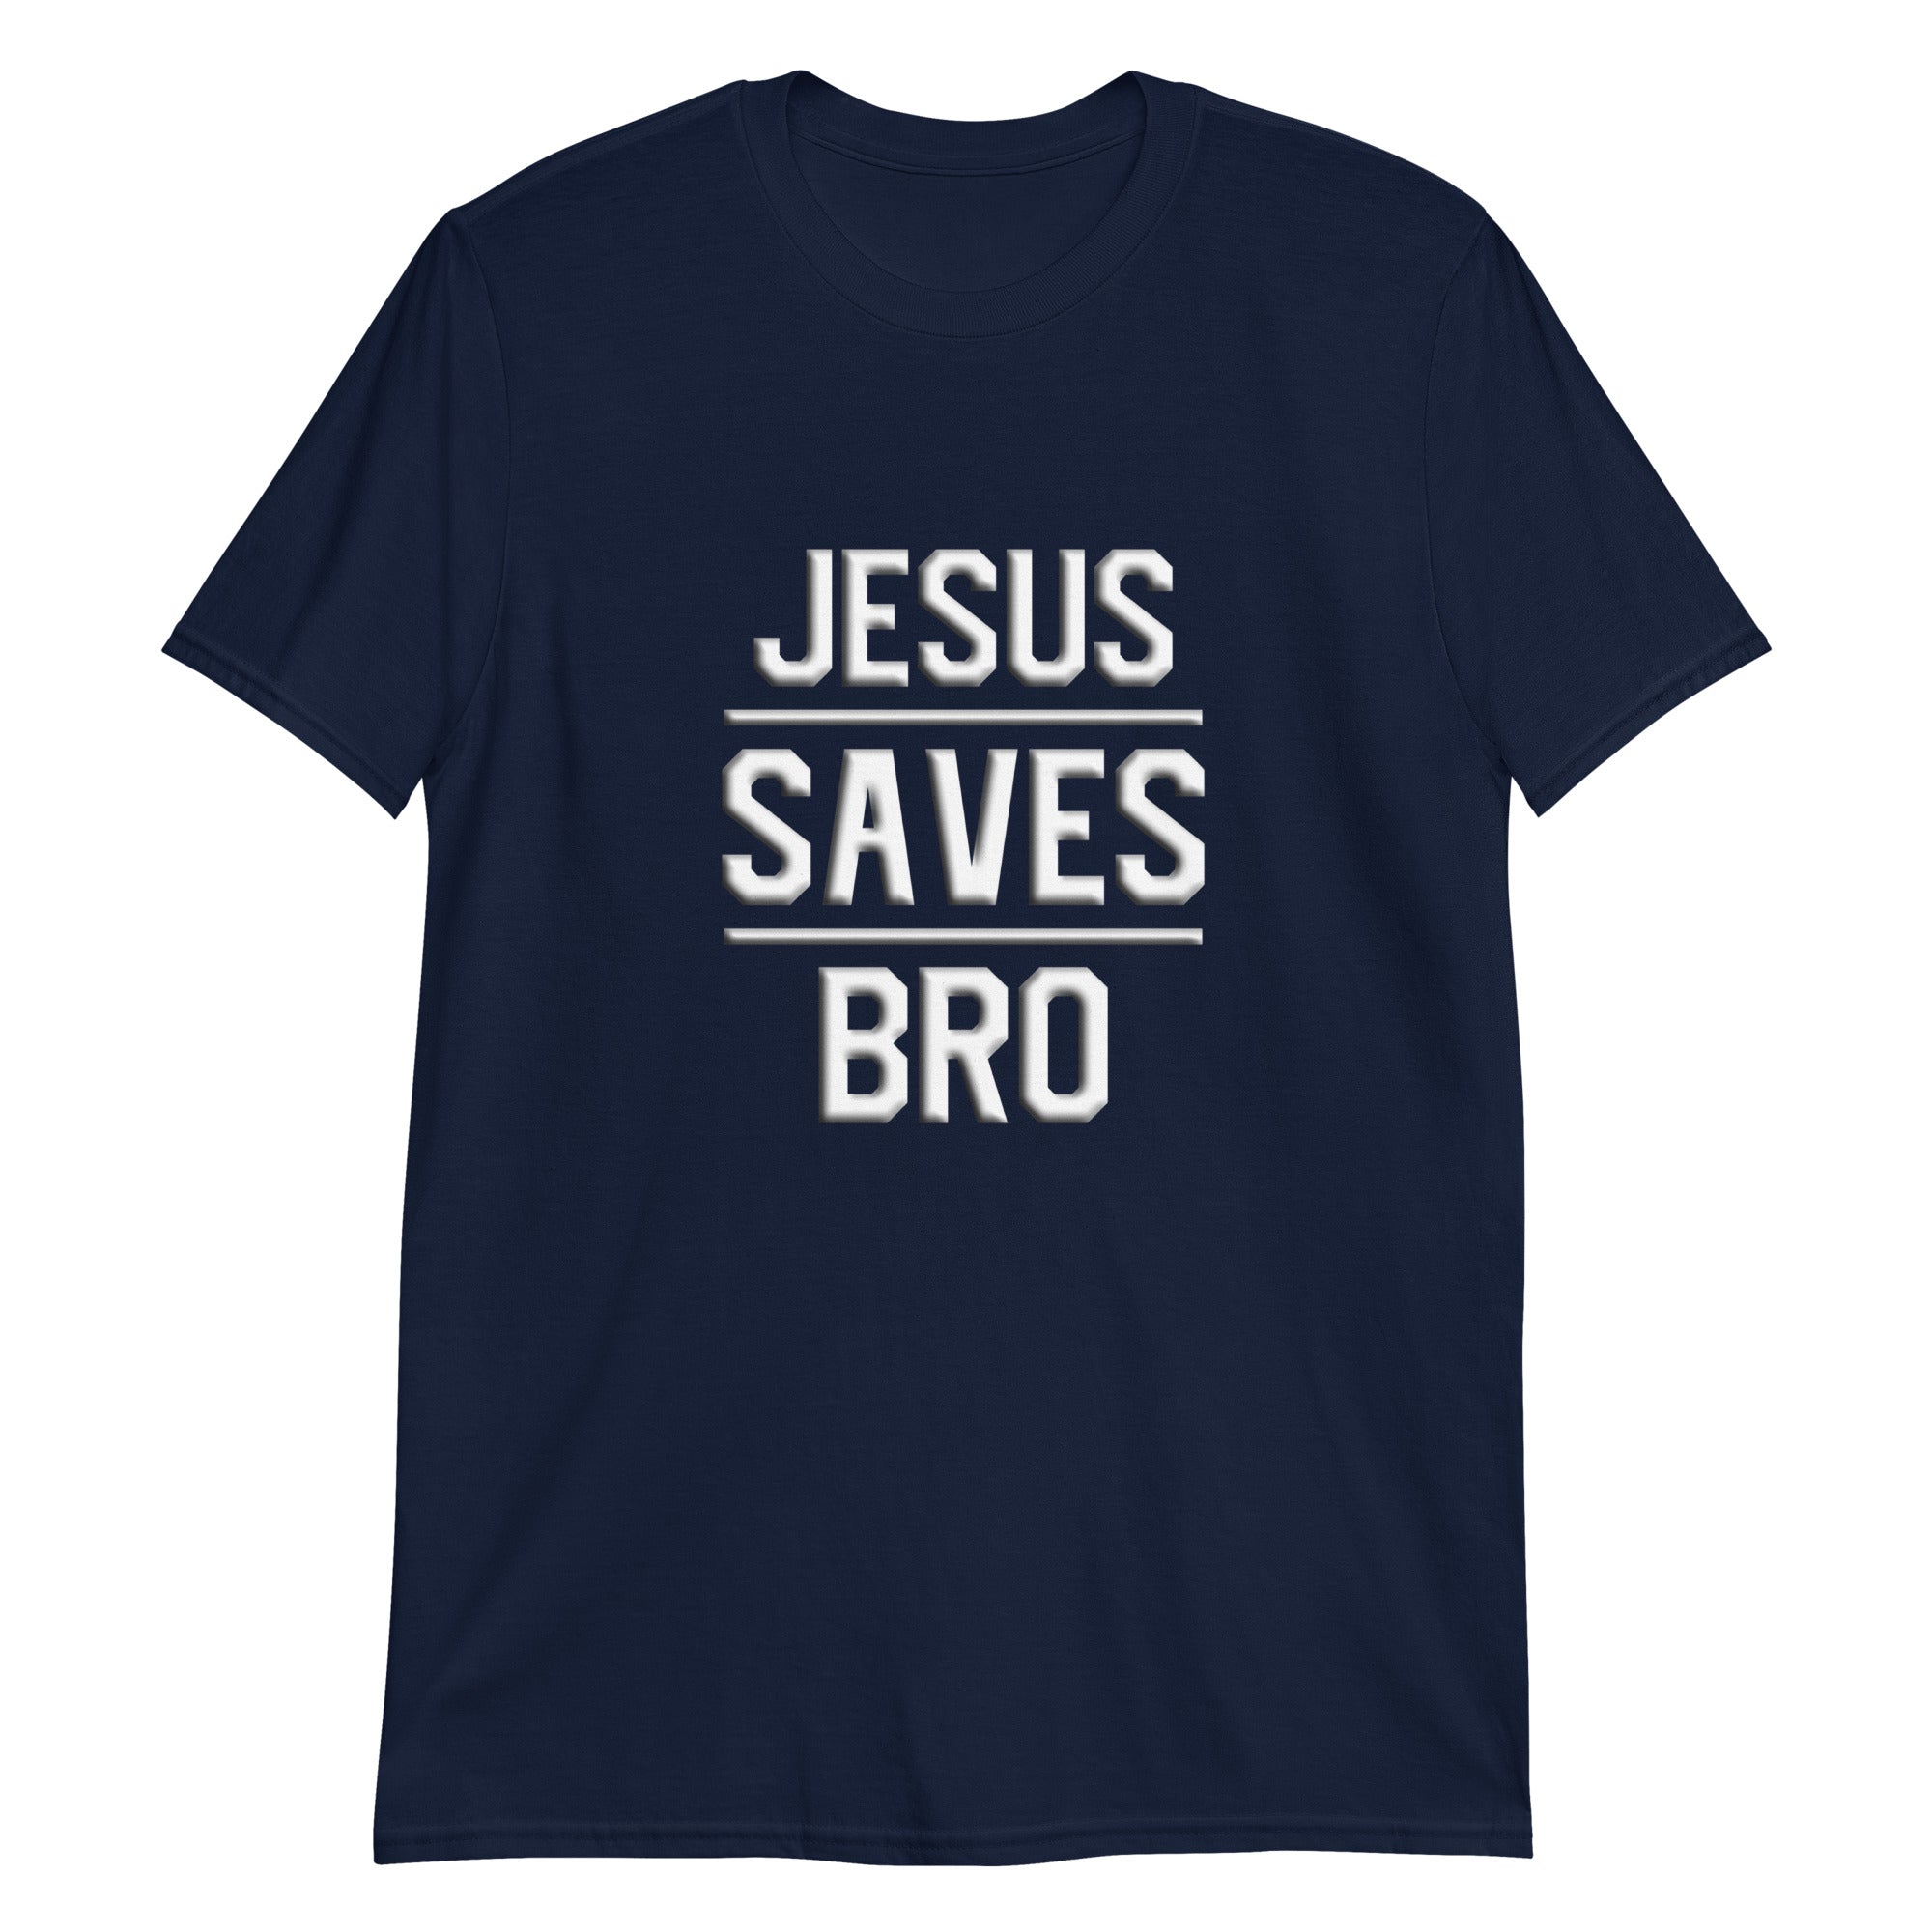 Jesus Saves Bro Tee